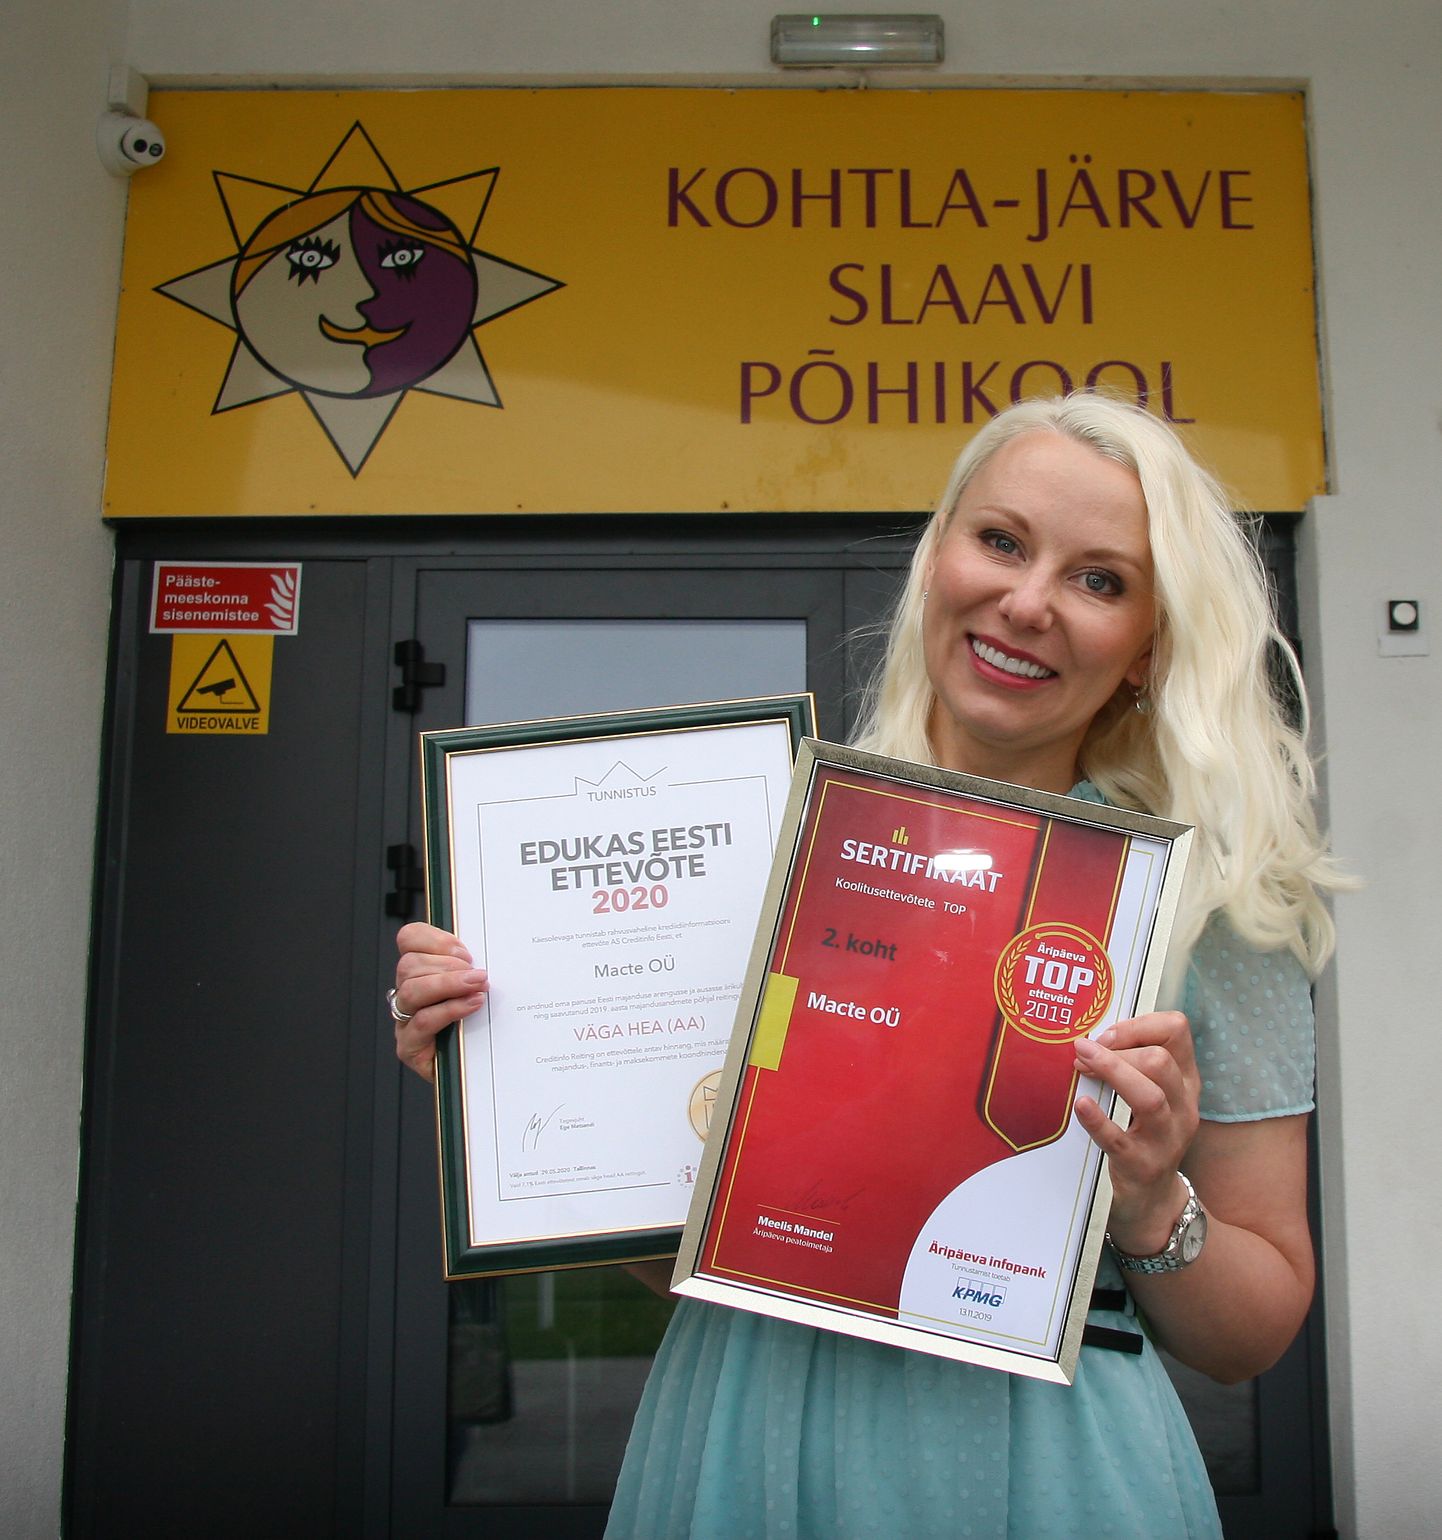 Svetlana Šiškina koolituskeskus pälvis eduka Eesti ettevõtte 2020 tiitli ning paikneb Eesti koolitusfirmade edetabelis 2. kohal.